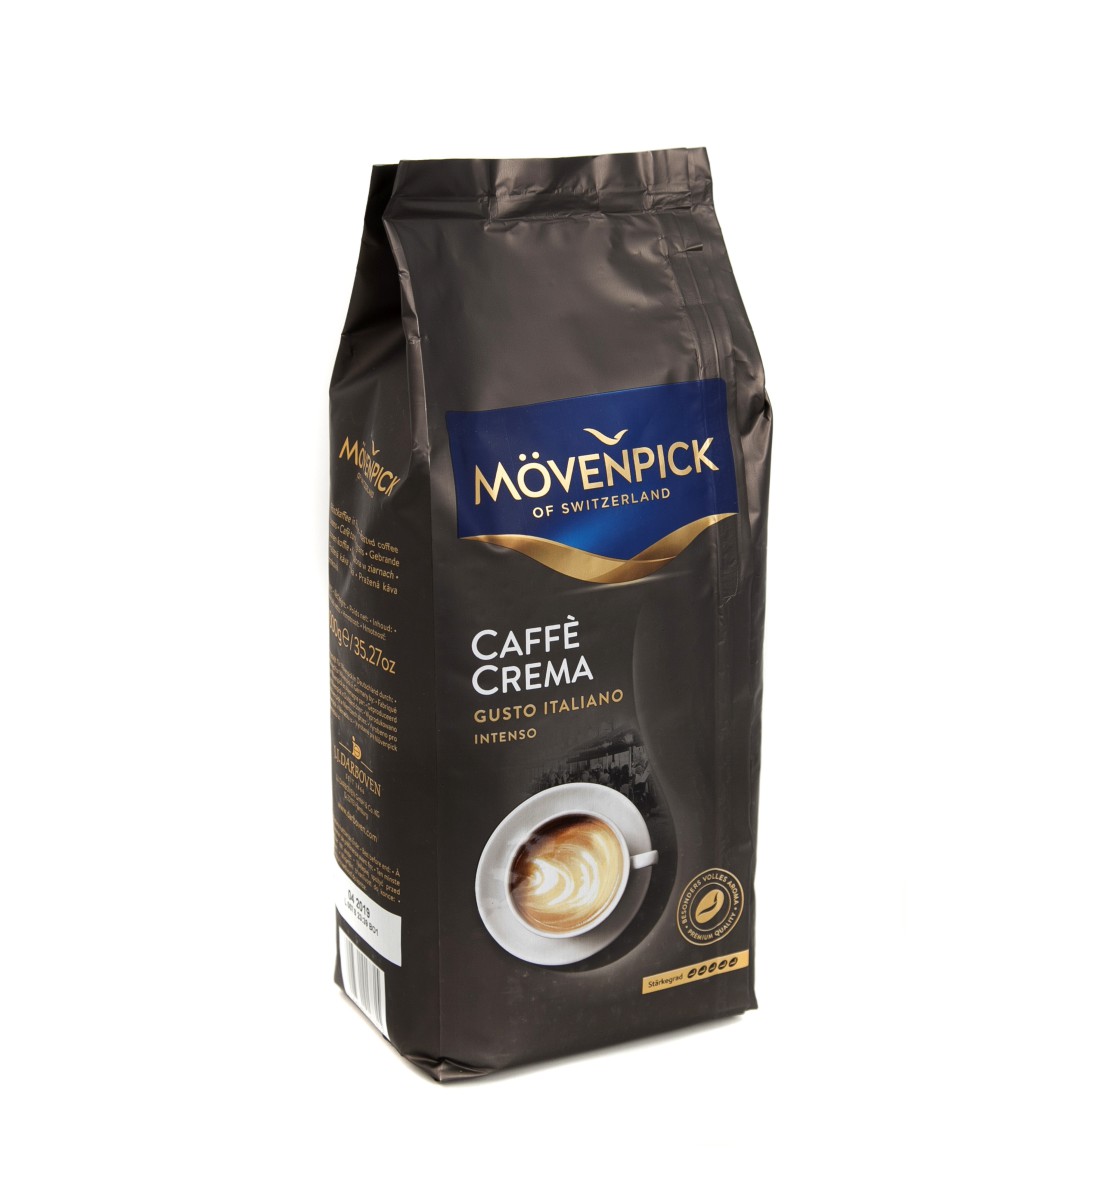 Movenpick Caffe Crema Gusto Italiano Intenso cafea boabe 1 kg